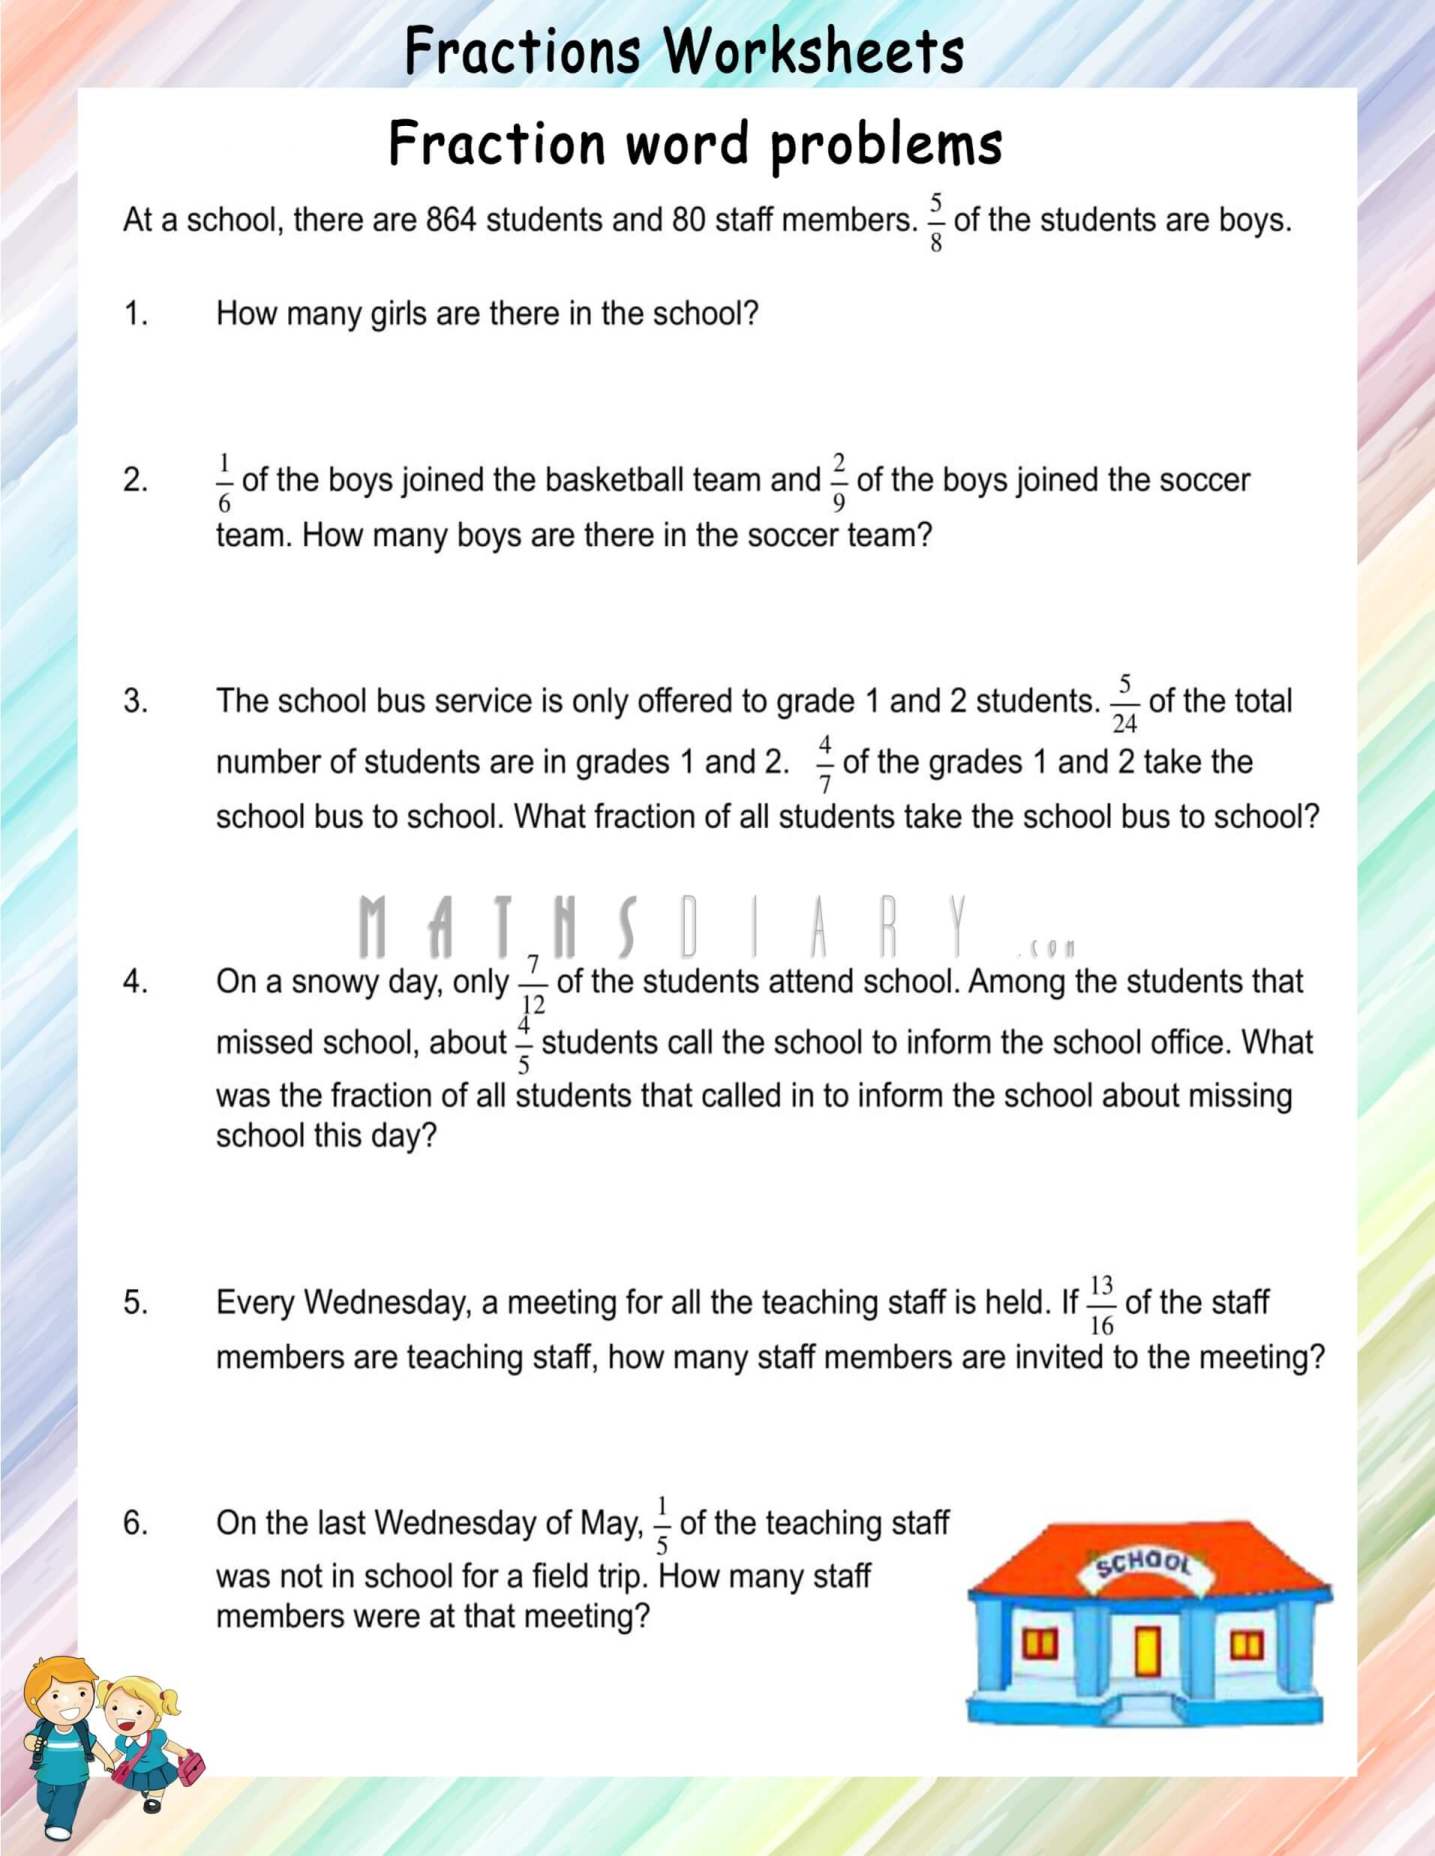 Multiplication Fraction Word Problems Worksheet